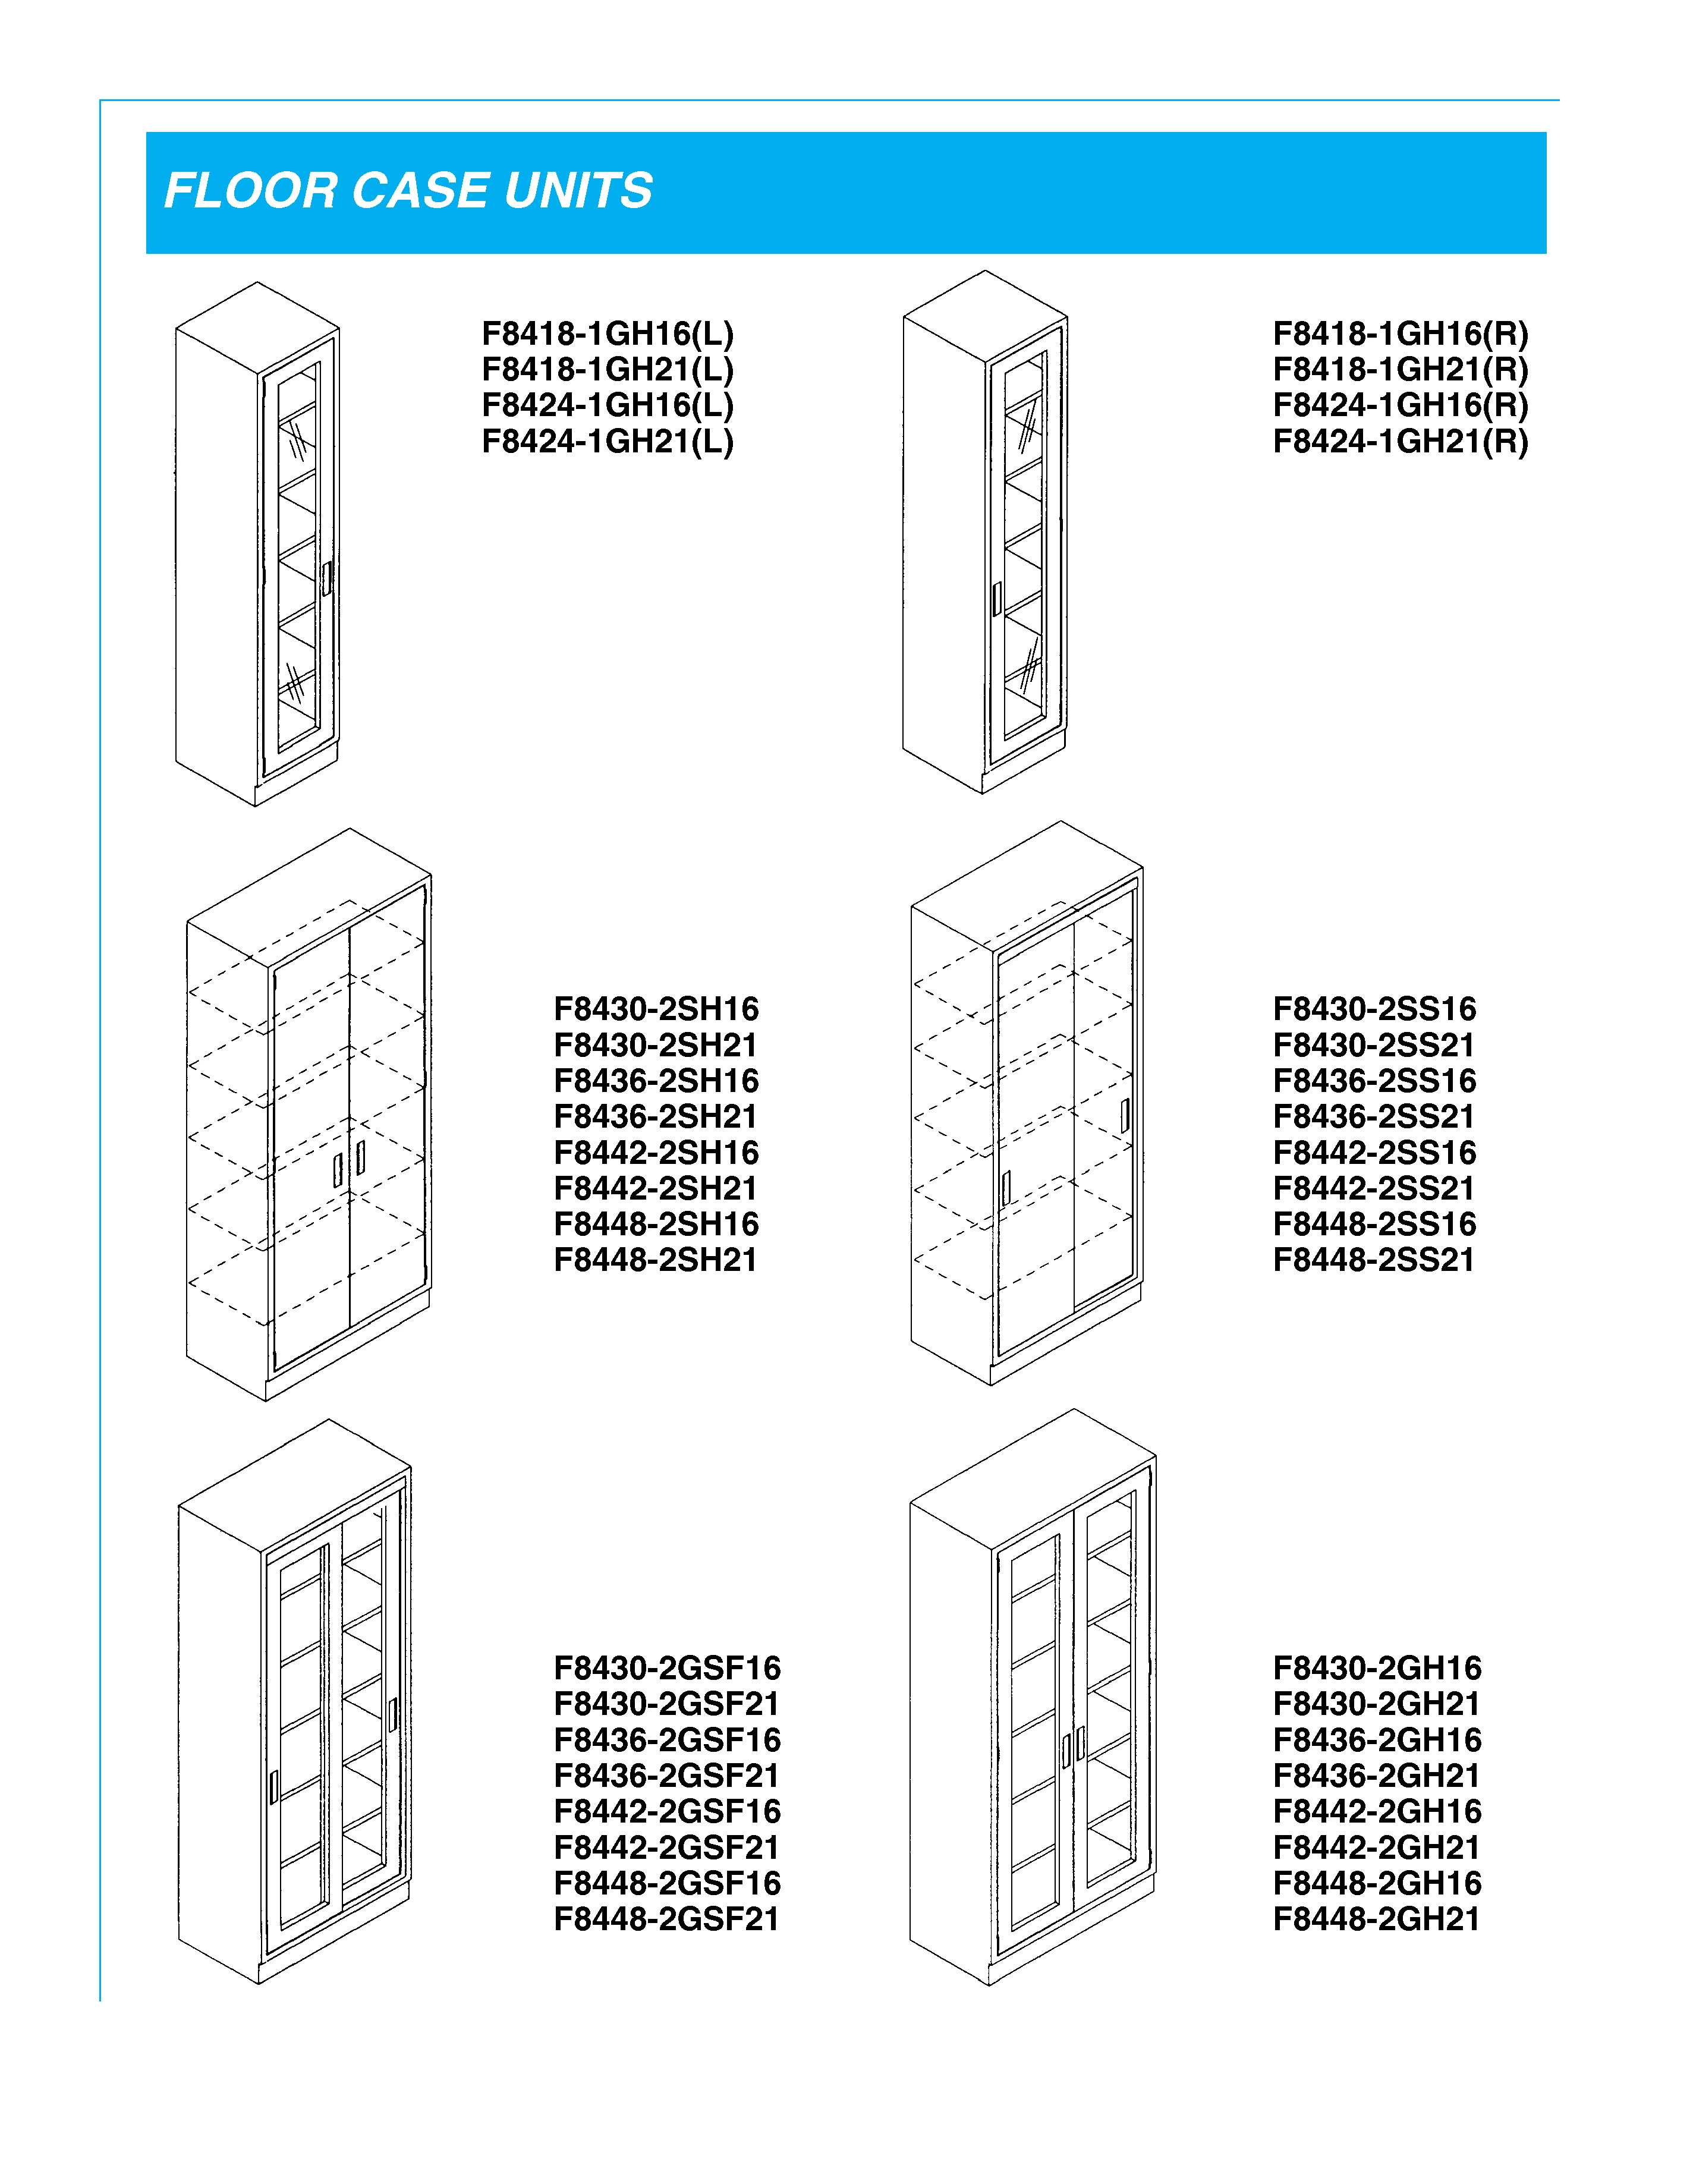 Floor Case Units Floor Glassware Cabinets with Doors or without doors